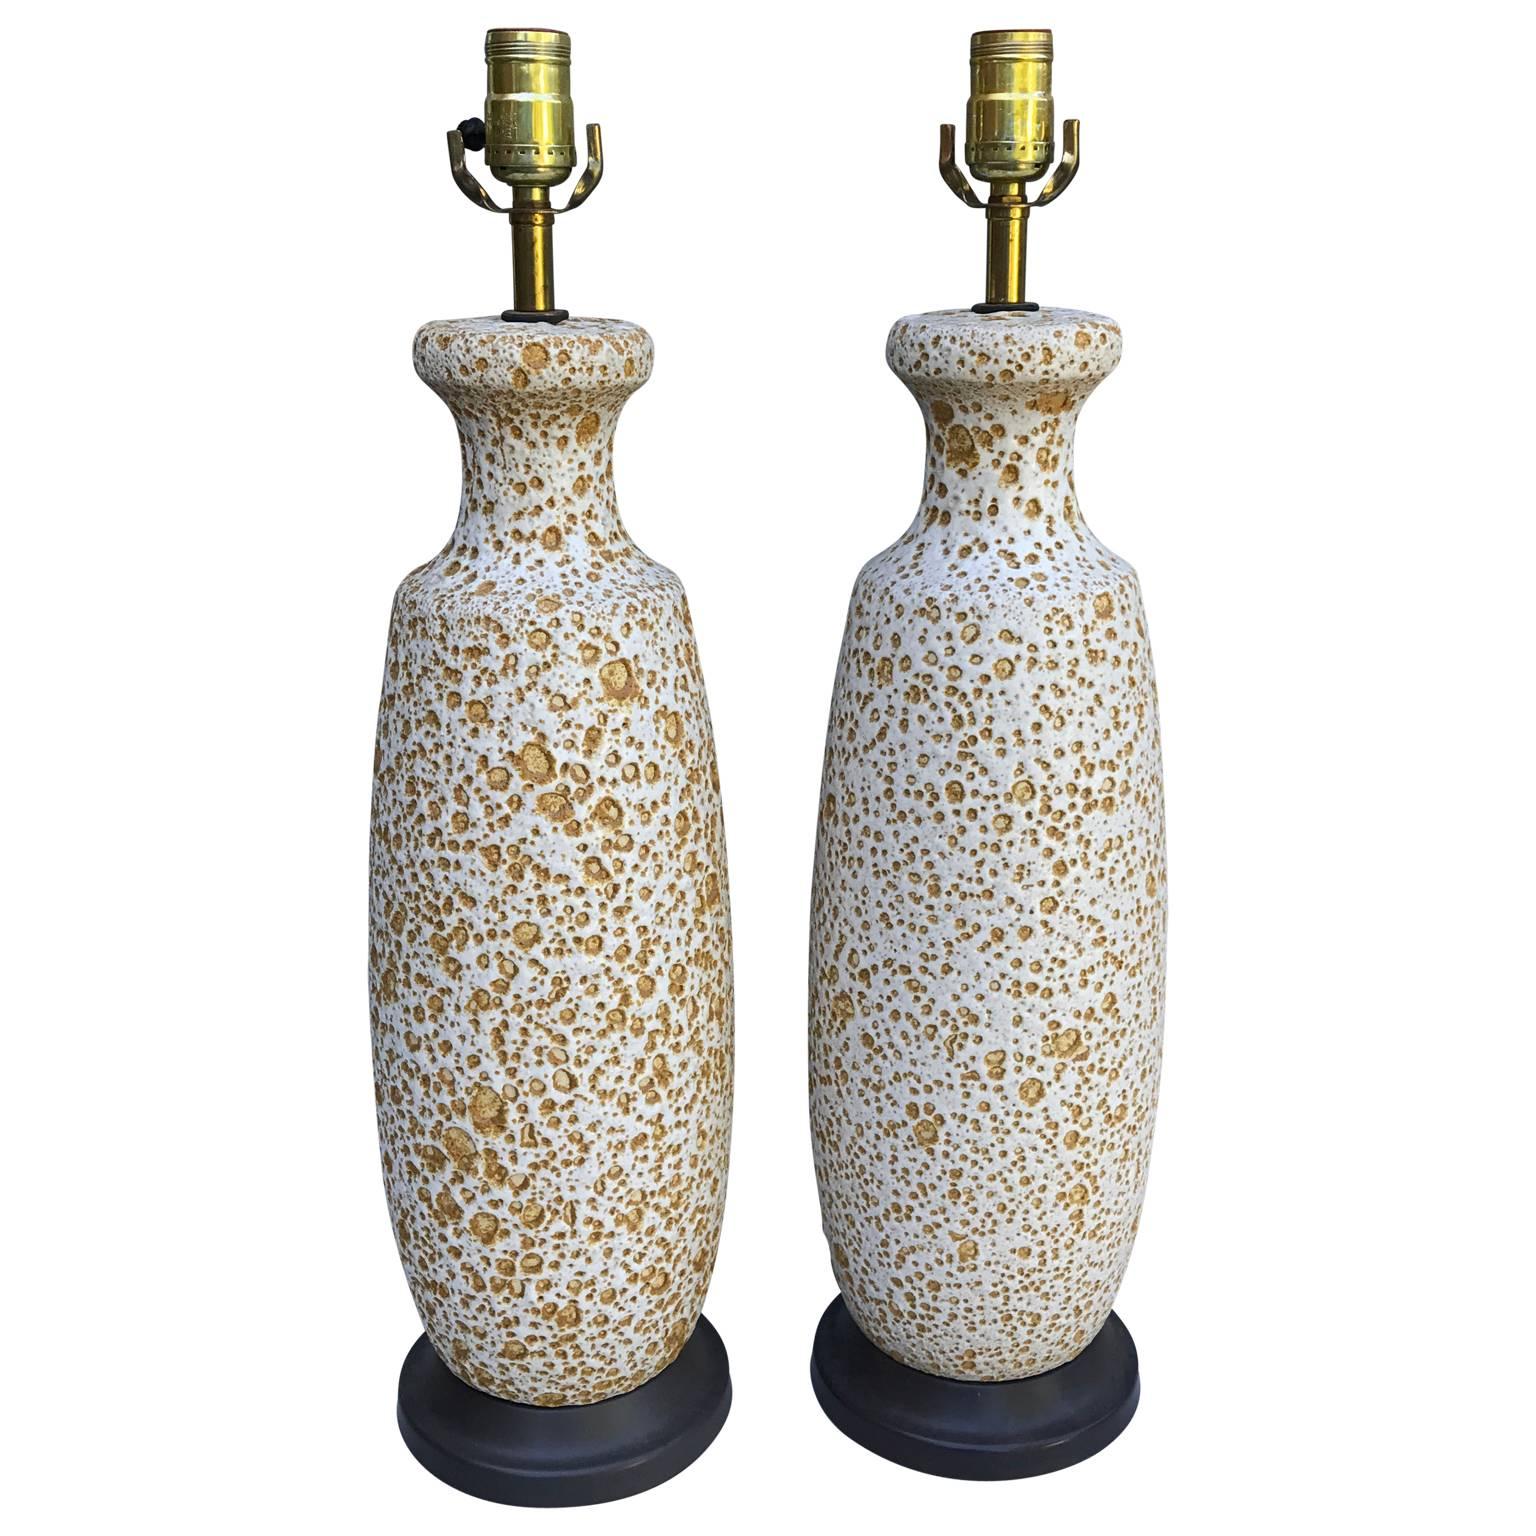 Cast Pair of Midcentury Ceramic Lamps